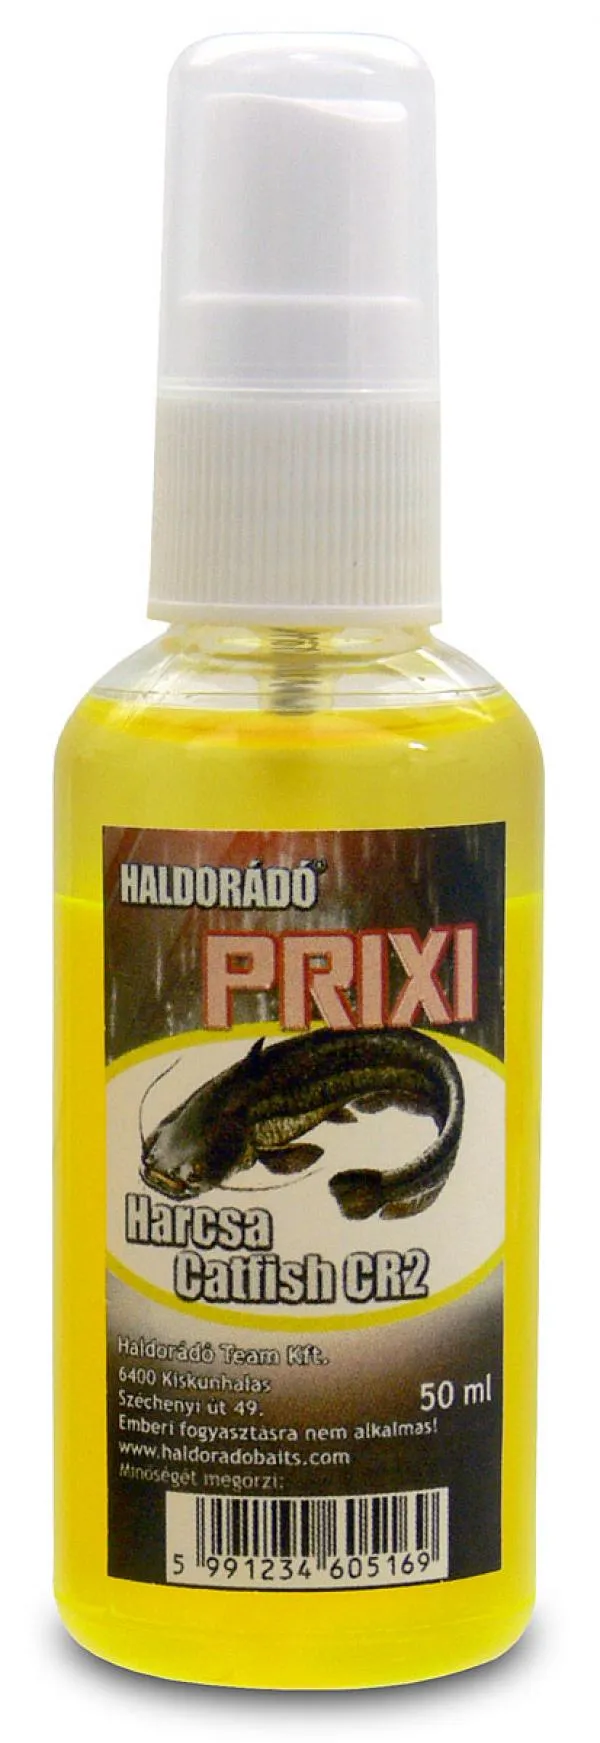 Haldorádó PRIXI ragadozó aroma spray - Harcsa/Catfish CR2